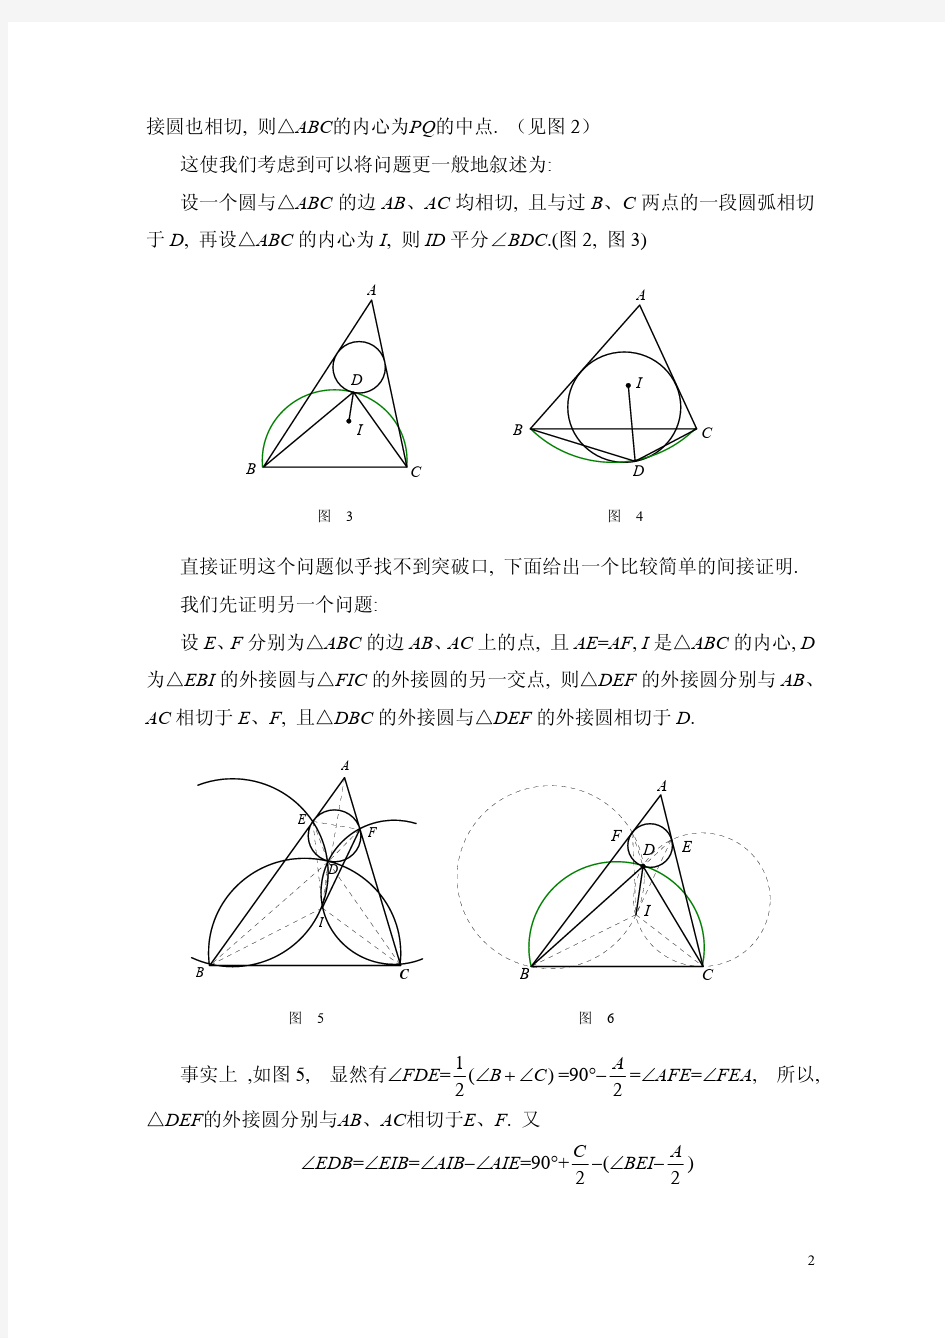 国外数学竞赛中几道平面几何问题的解读与欣赏